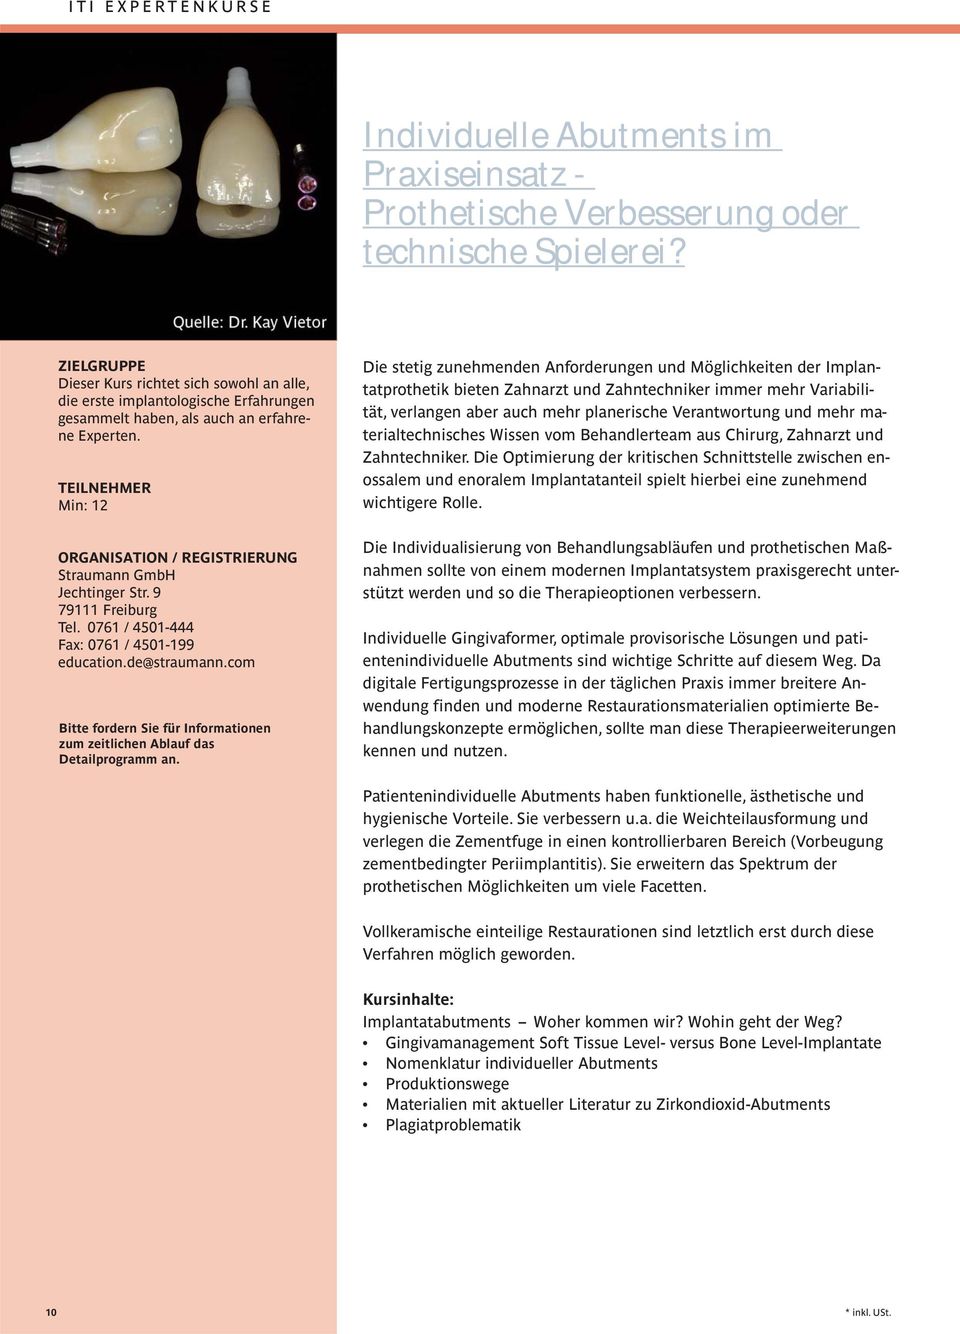 TEILNEHMER Min: 12 ORGANISATION / REGISTRIERUNG Straumann GmbH Jechtinger Str. 9 79111 Freiburg Tel. 0761 / 4501-444 Fax: 0761 / 4501-199 education.de@straumann.